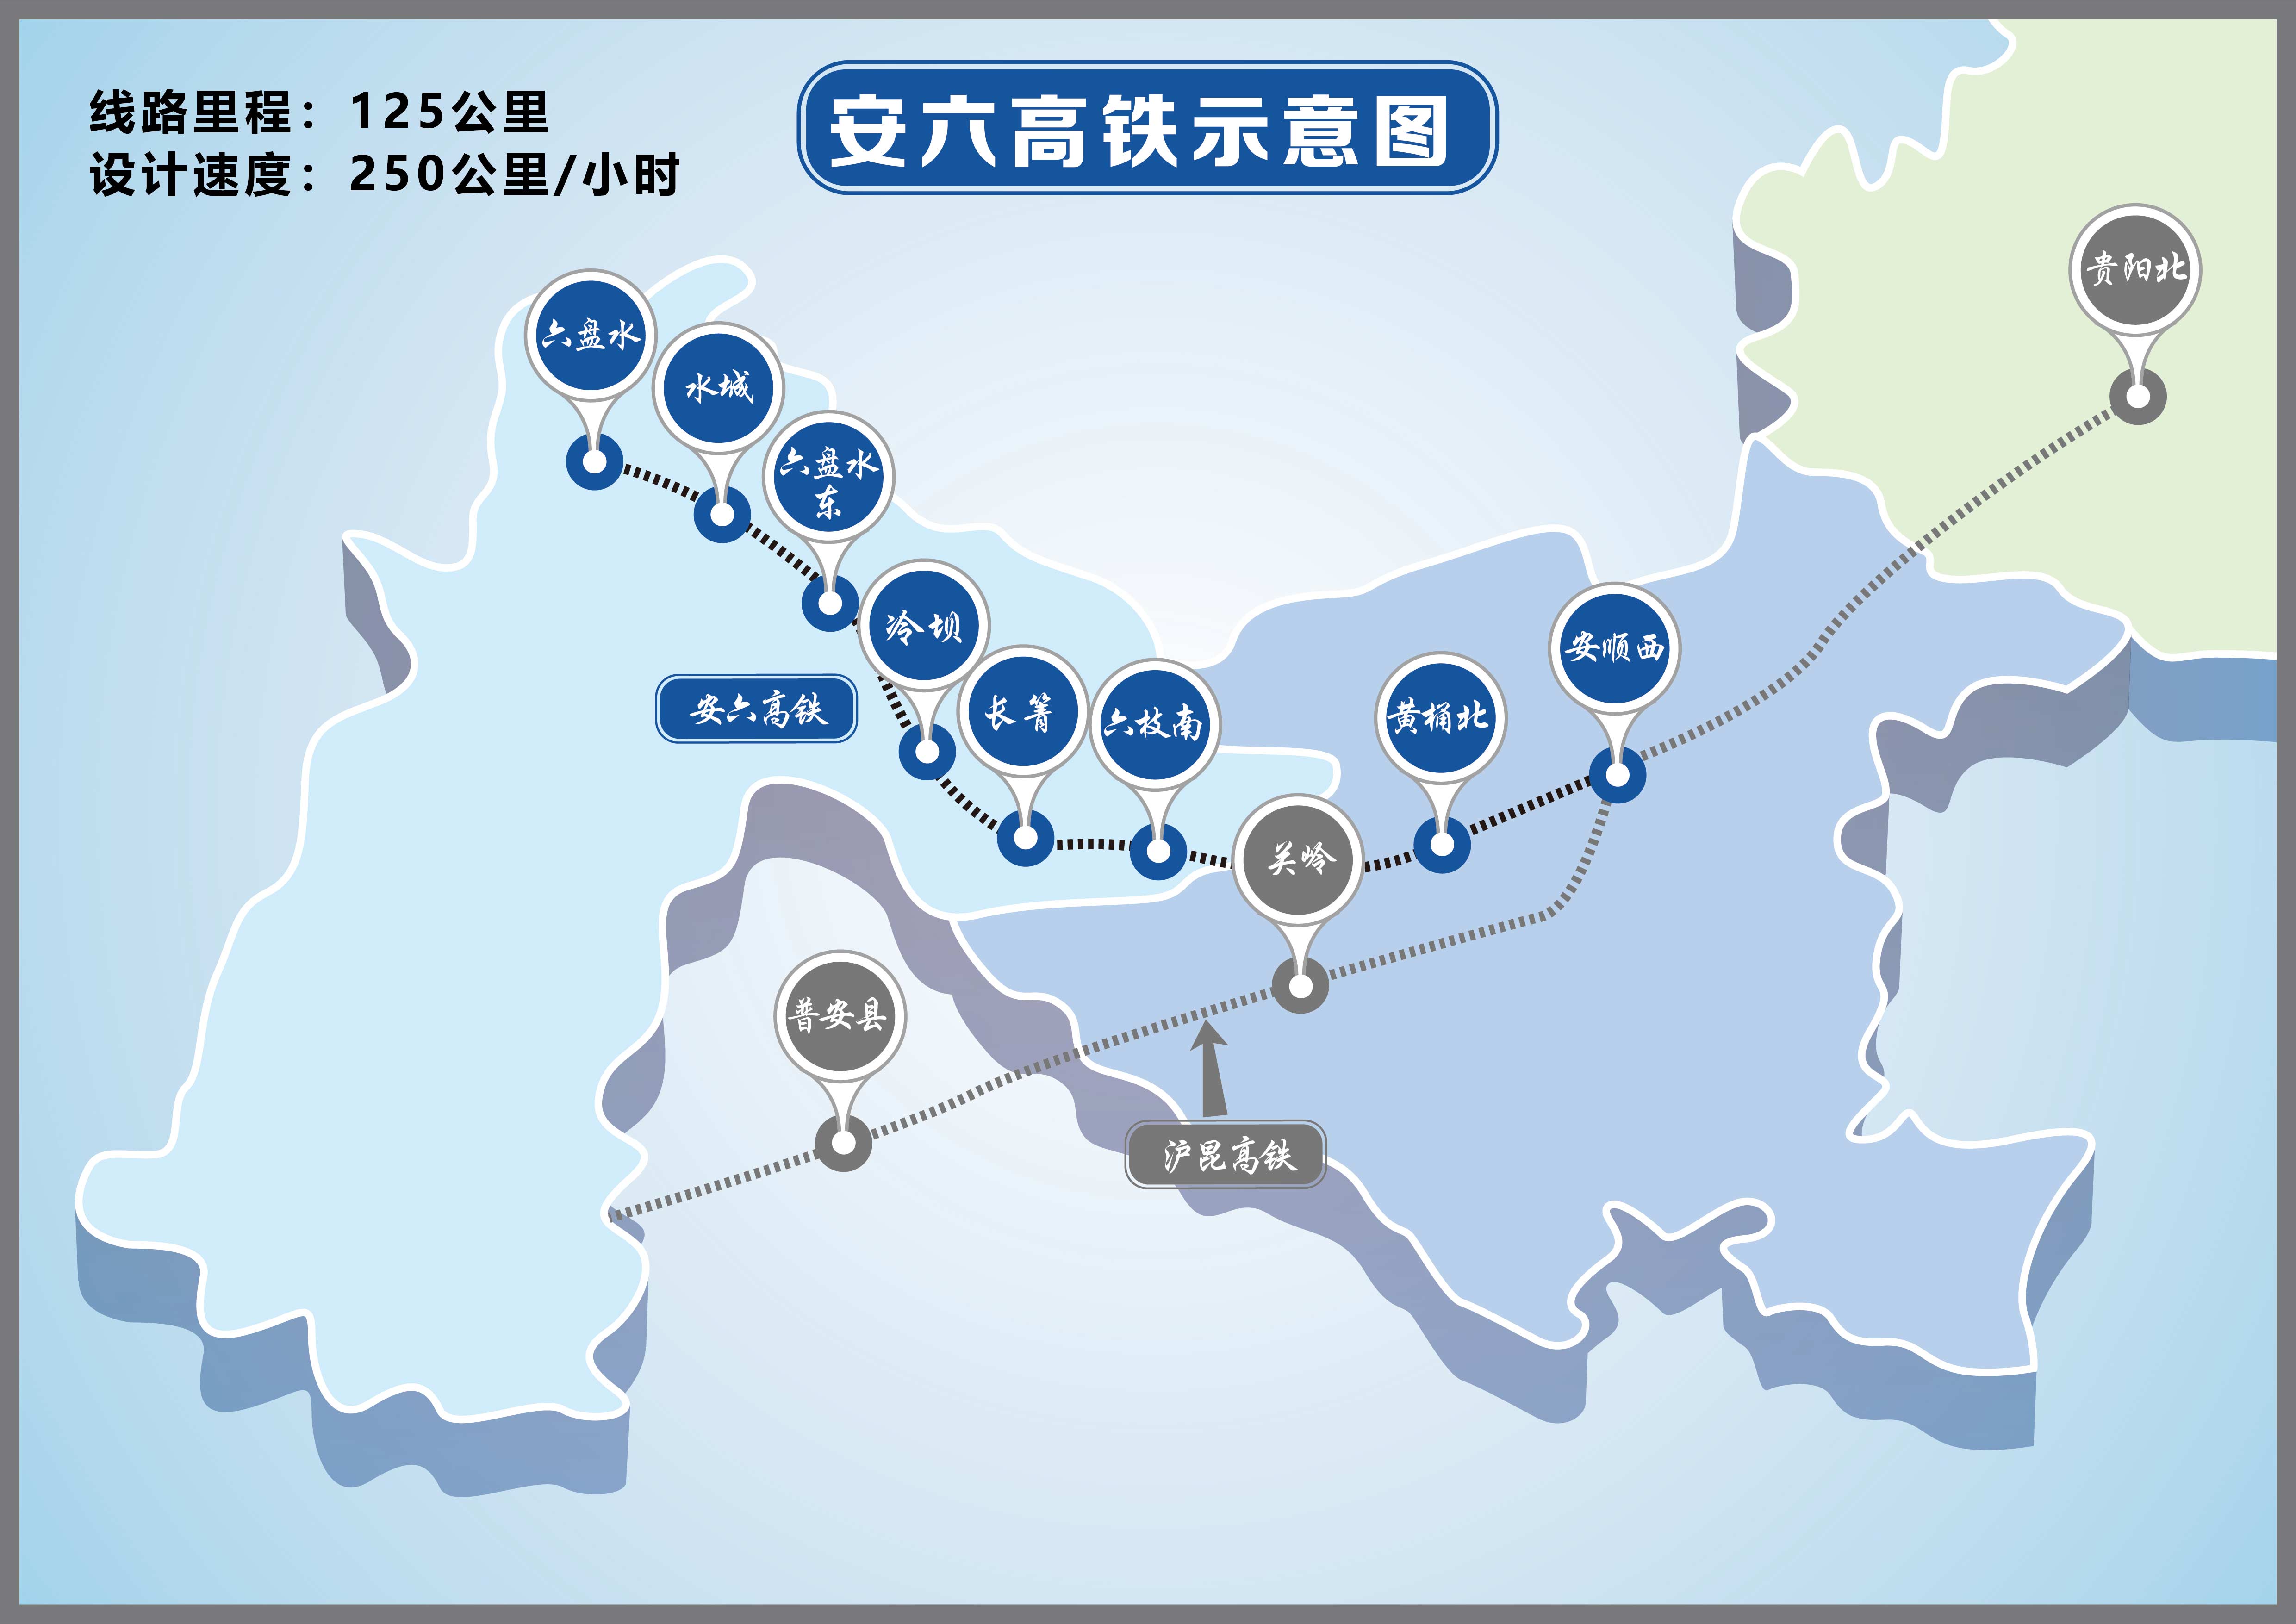 安六高铁将开通运营 贵阳至六盘水最快1小时09分可达